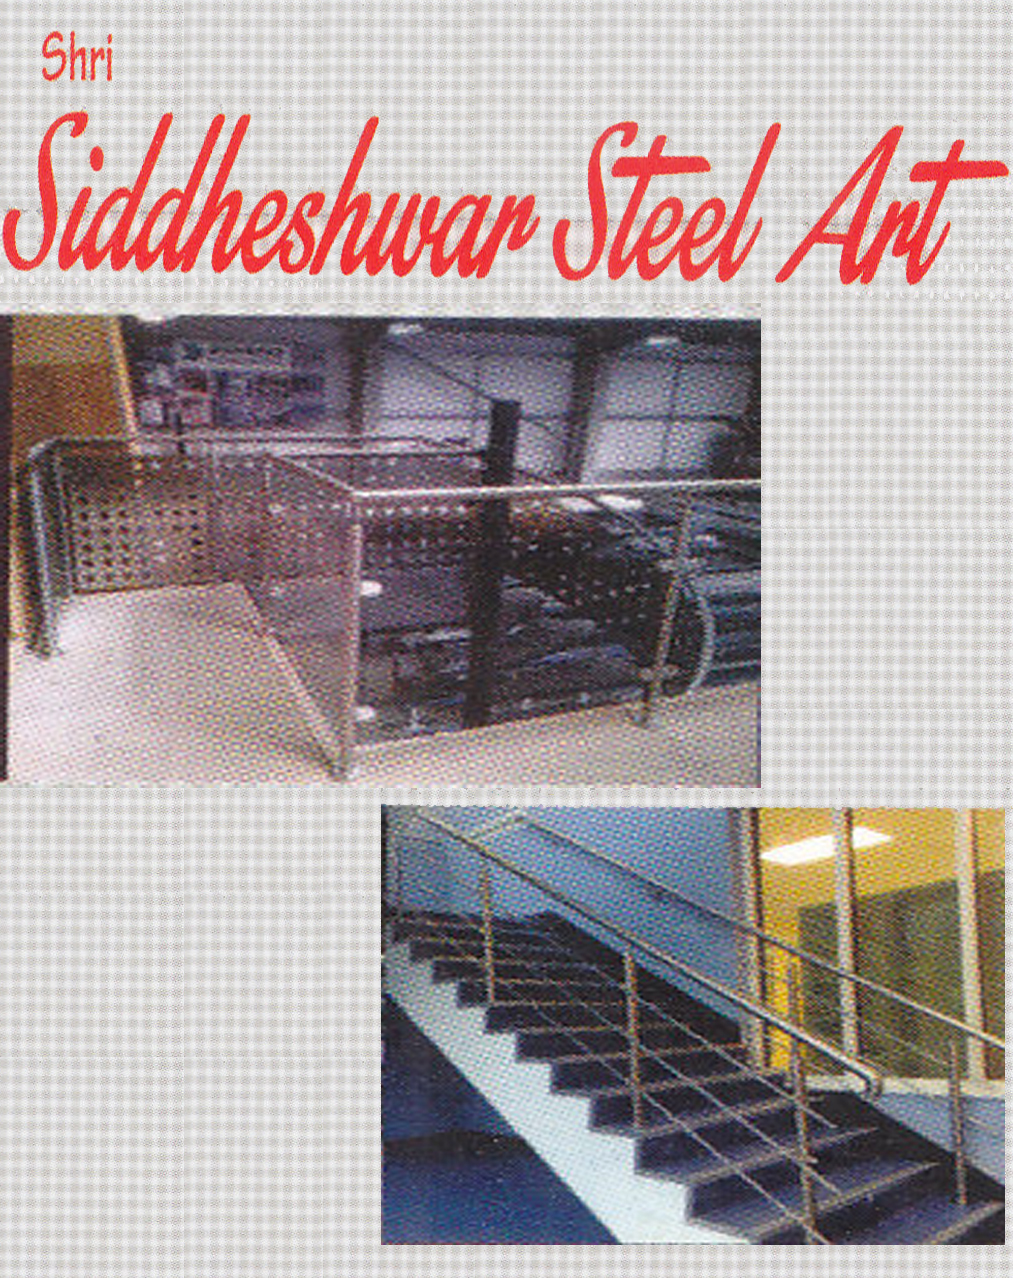 SHRI SIDDHESHWAR STEEL ART | SolapurMall.com